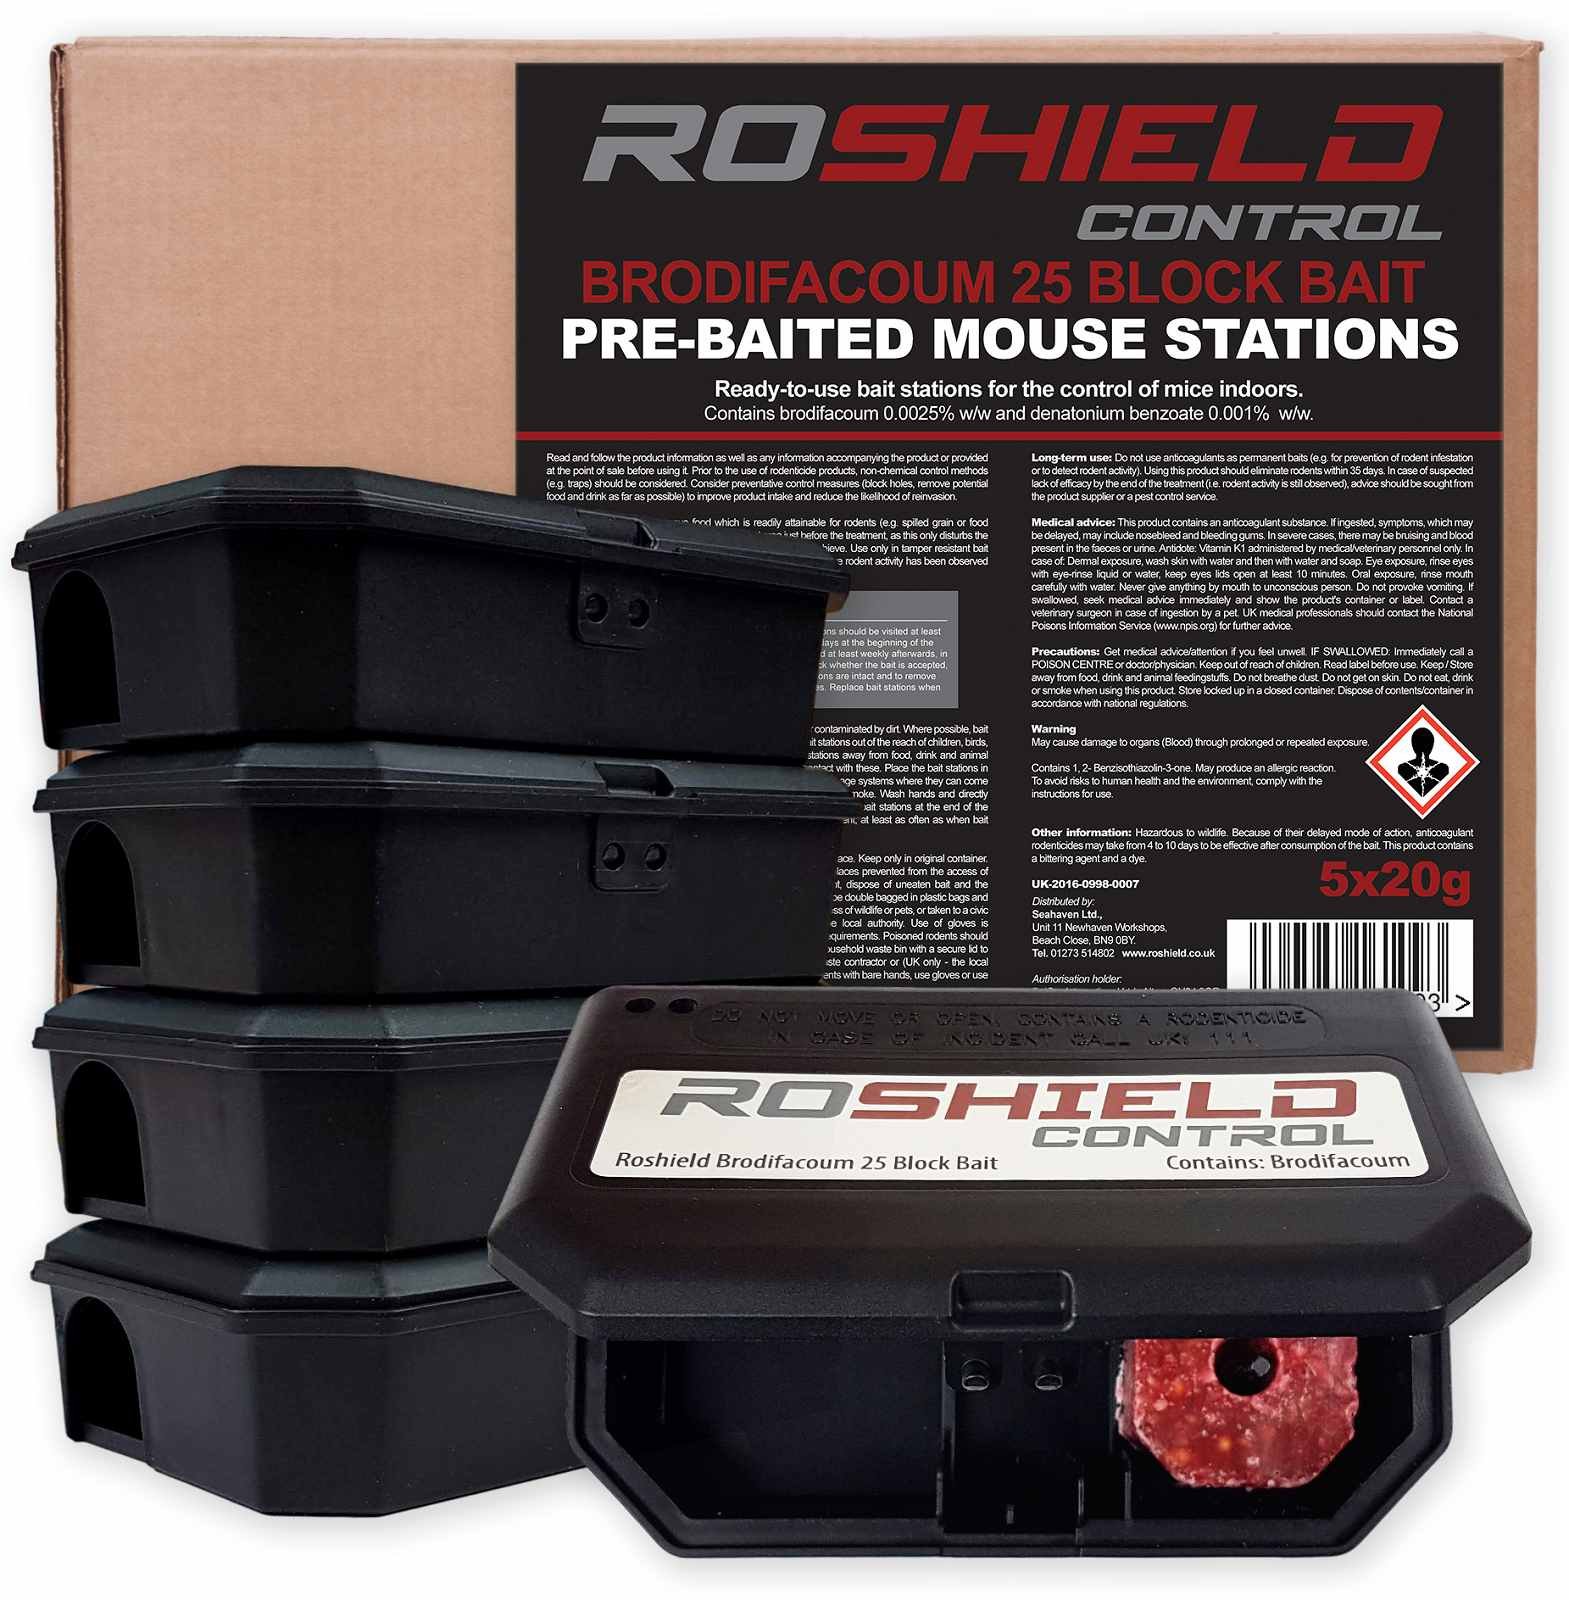 https://www.roshield.co.uk/wp-content/uploads/2021/01/Roshield_Pre-Baited_Mouse_Kit.jpg